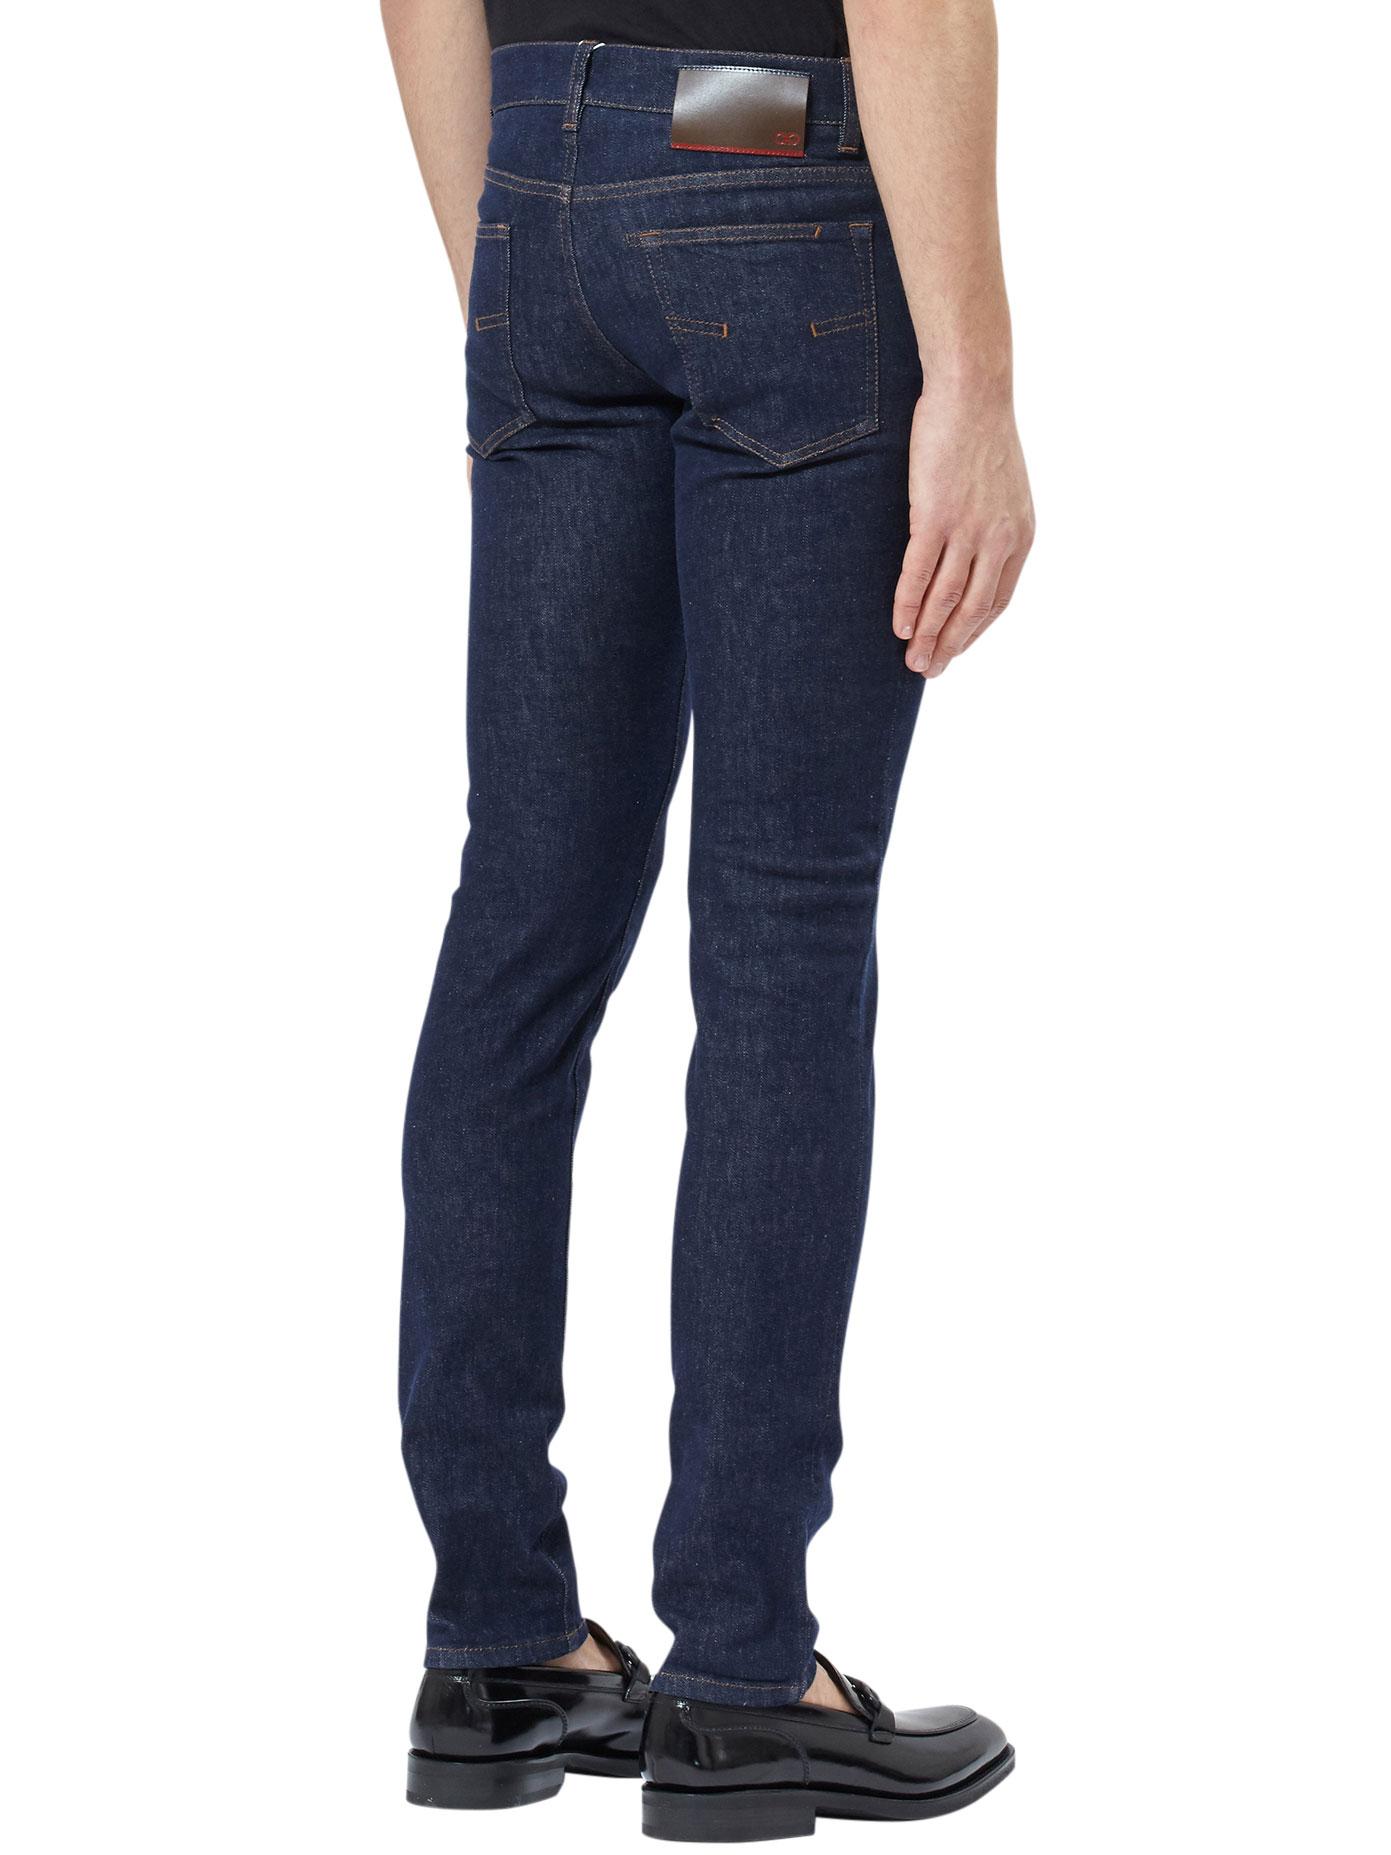 Lyst - Ferragamo Tailored Jeans in Blue for Men